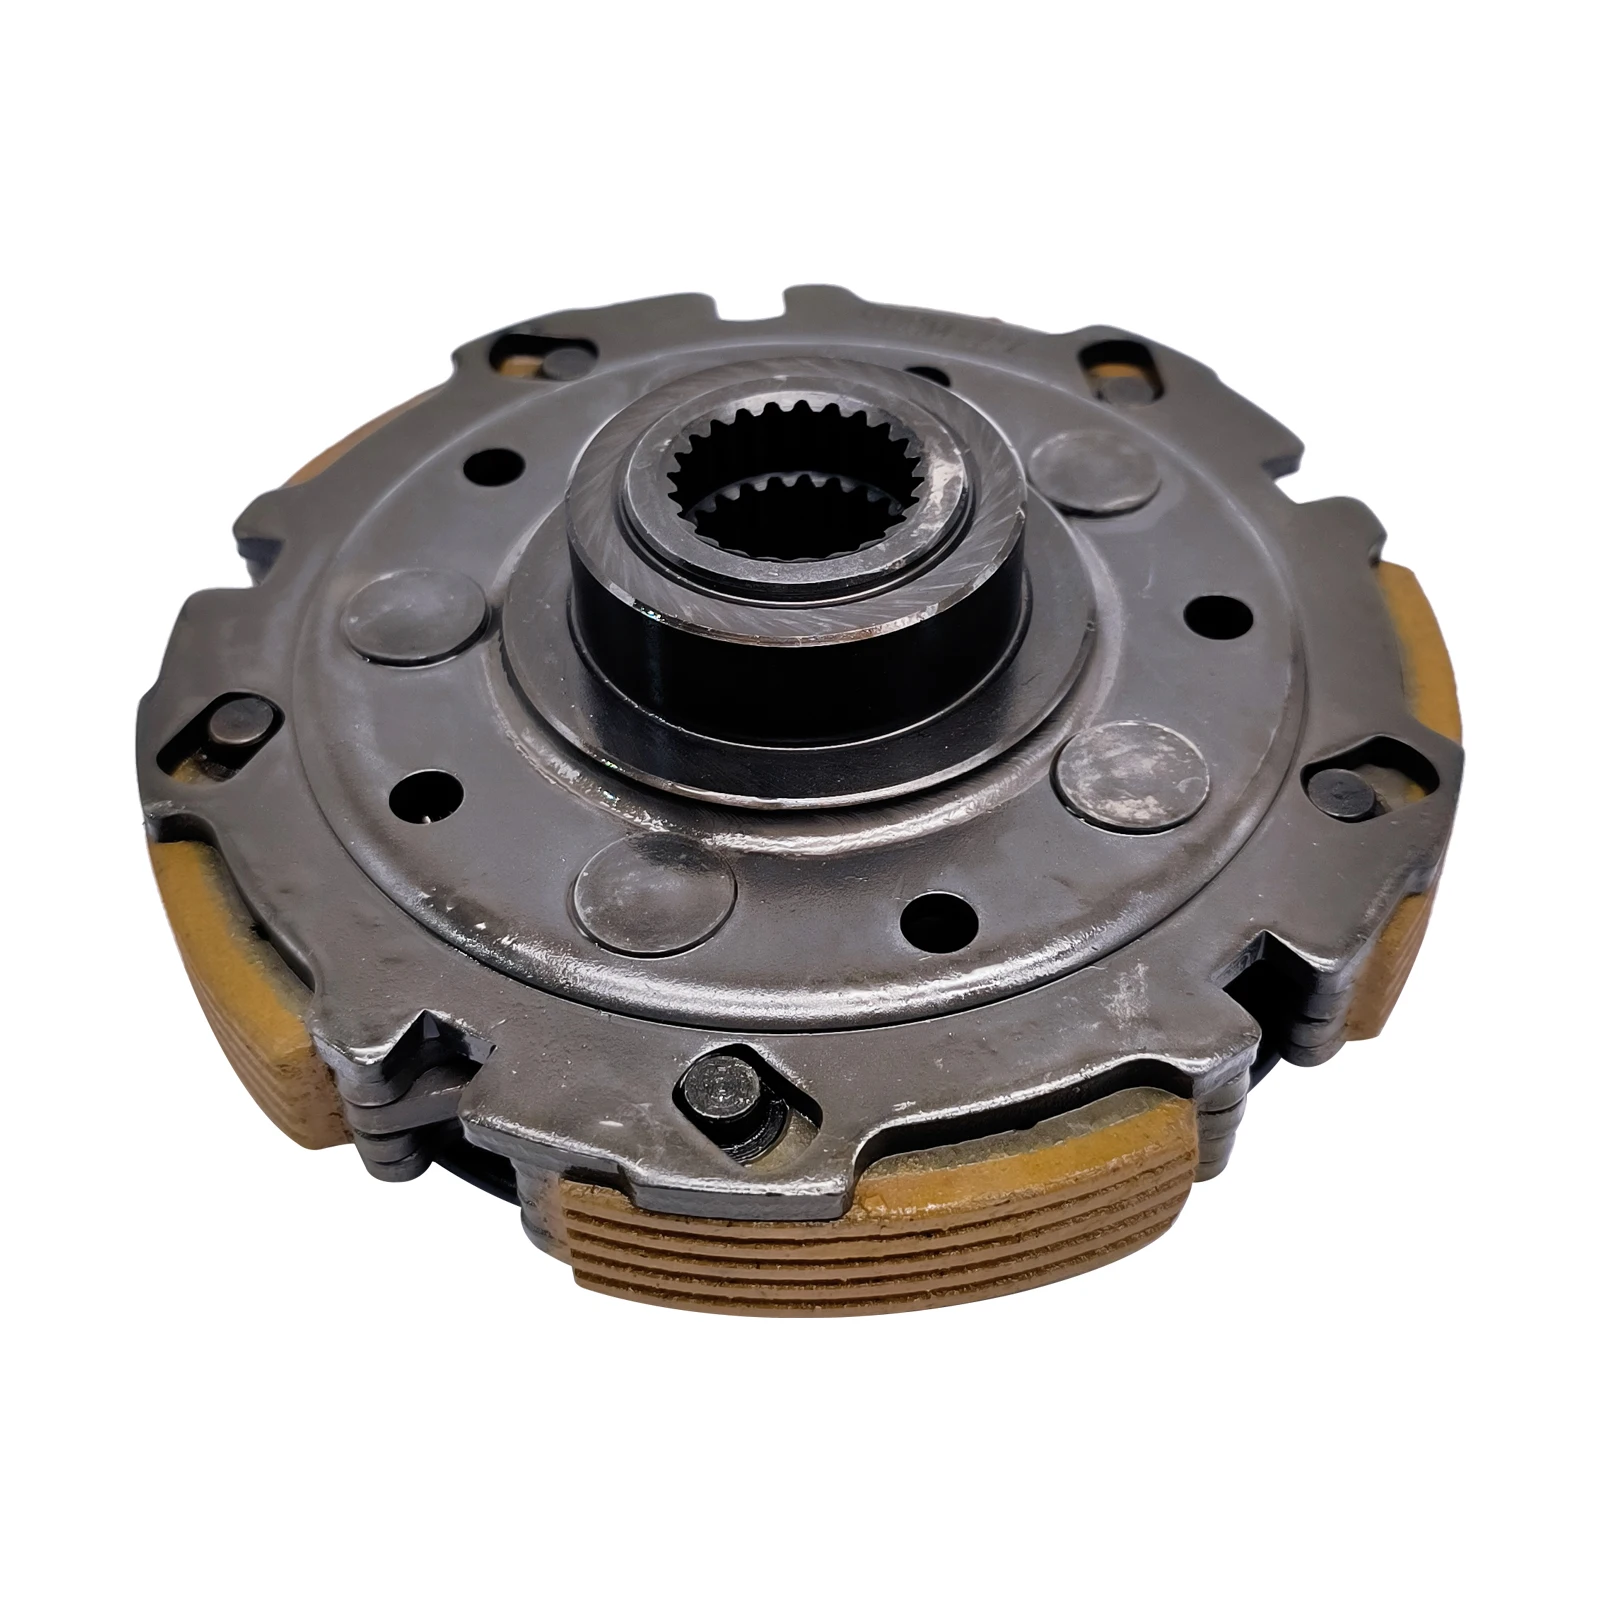 Clutch Assy For CFMOTO CF 500 188 X5 ATV UTV QUAD  Engine Spare Parts 0180-054000